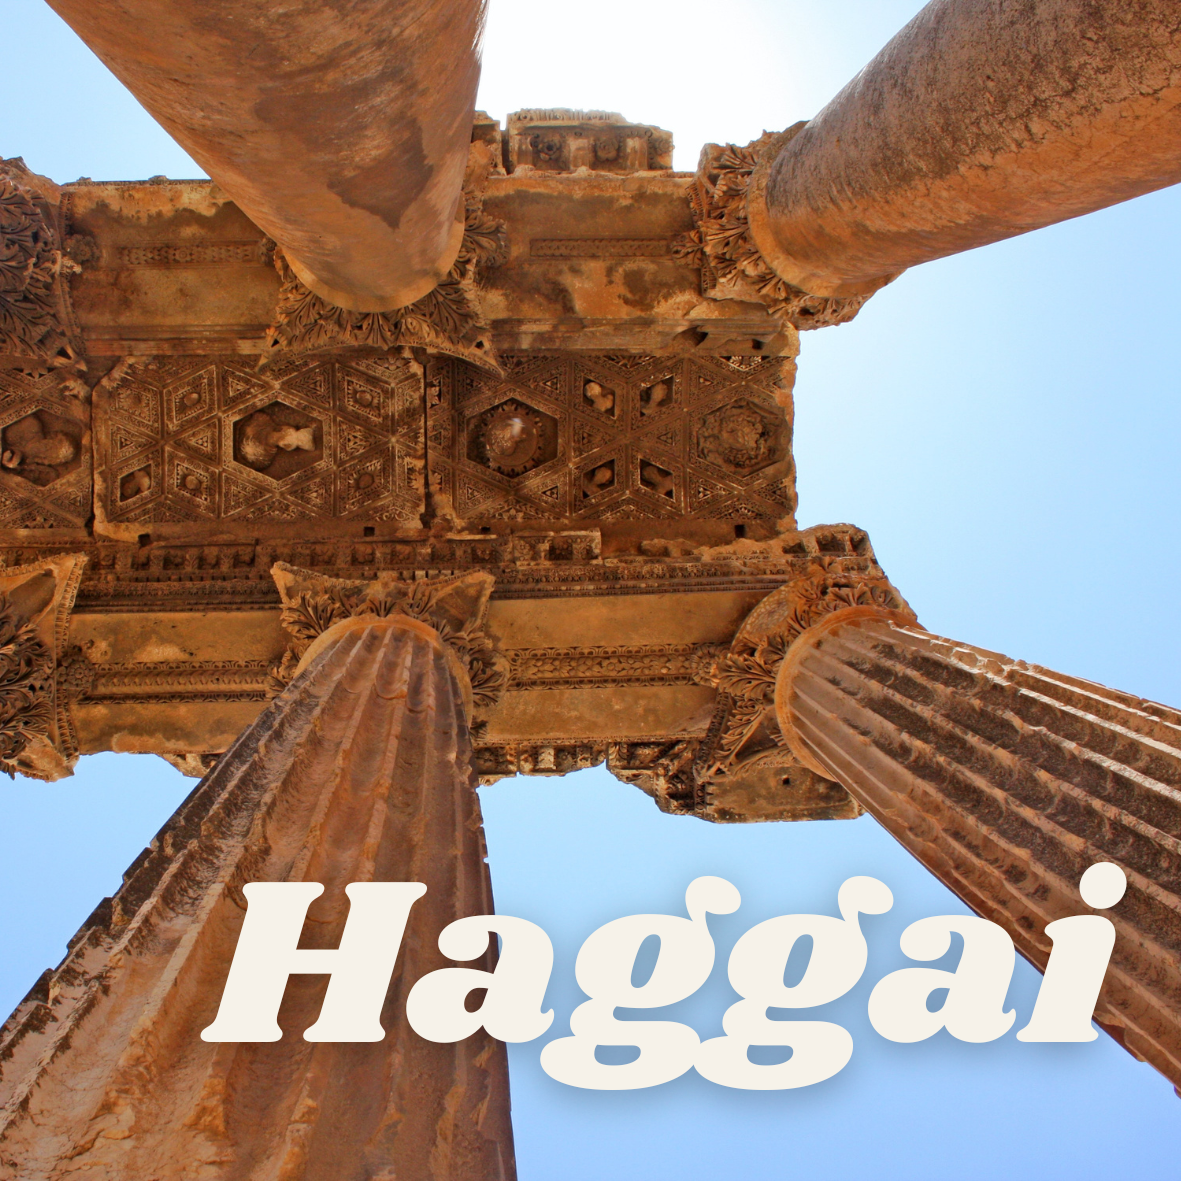 Haggai square